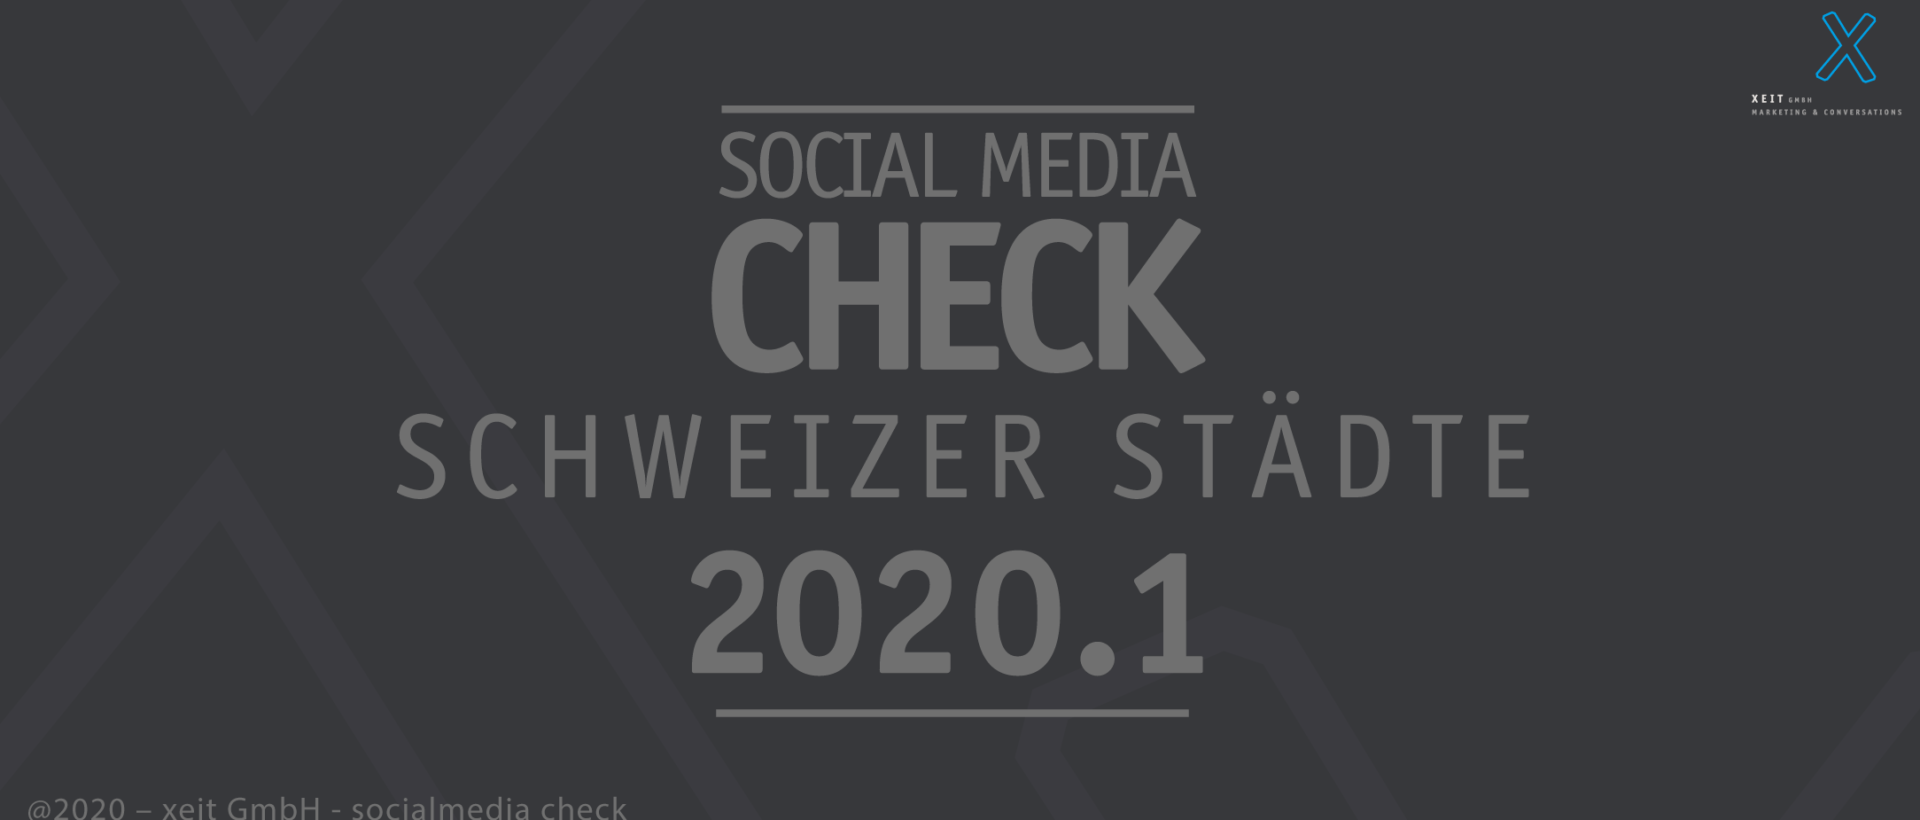 Social Media Check der 10 grössten Schweizer Städte im 2020